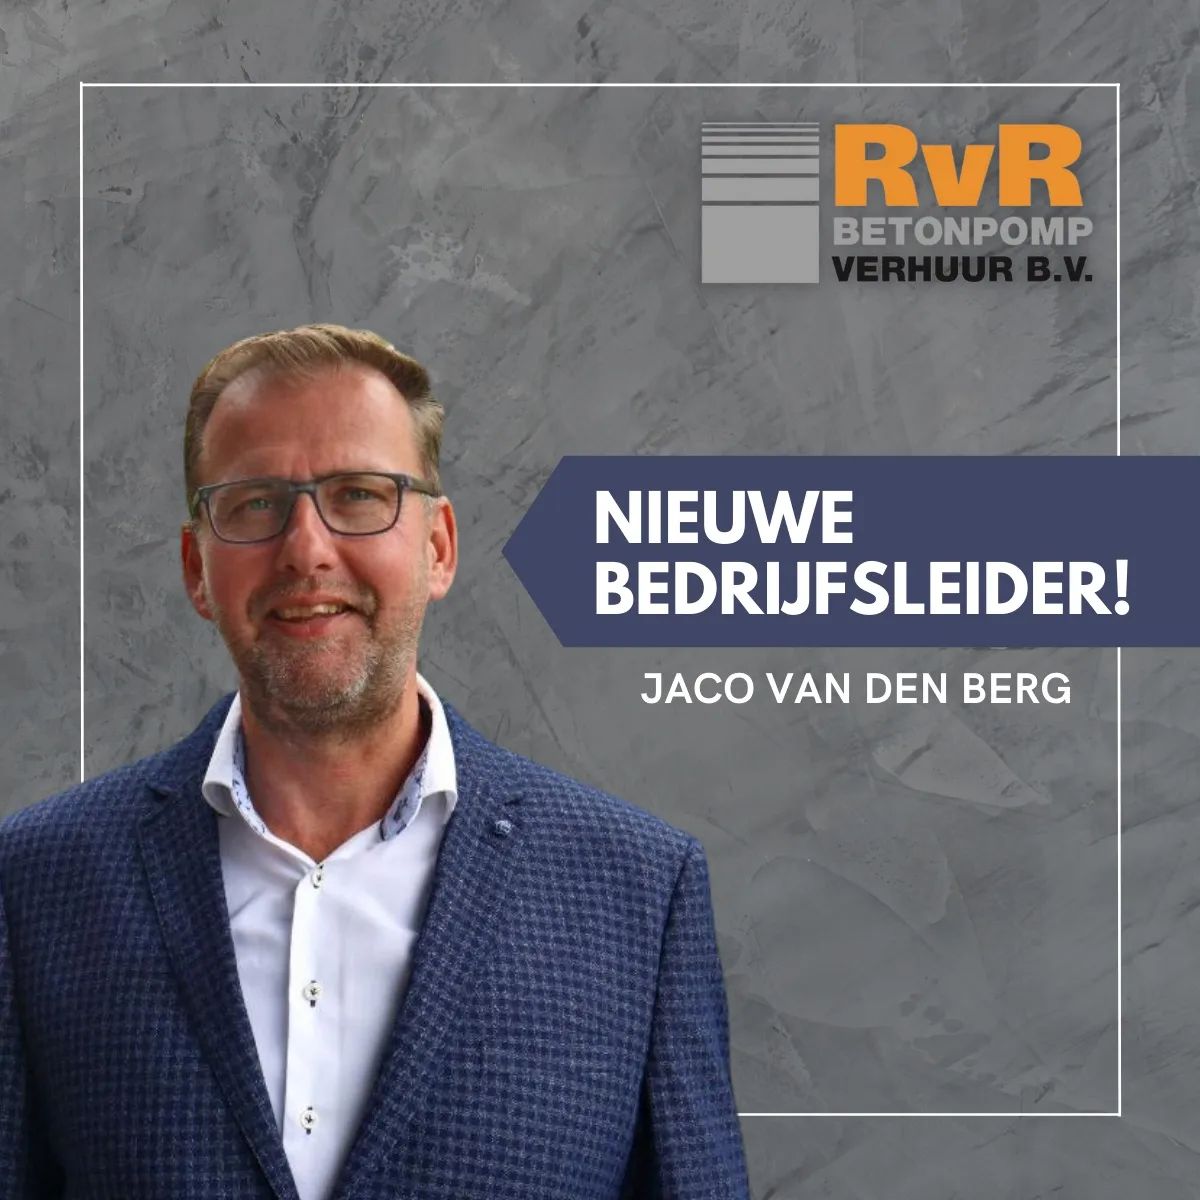 Sinds 1 juli is Jaco van den Berg bij ons gestart met zijn taken als bedrijfsleider. Jaco ondersteunt de directie (René en Hans) door diverse werkzaamheden te coördineren en het personeel te begeleiden. Welkom bij het team, Jaco! 😄